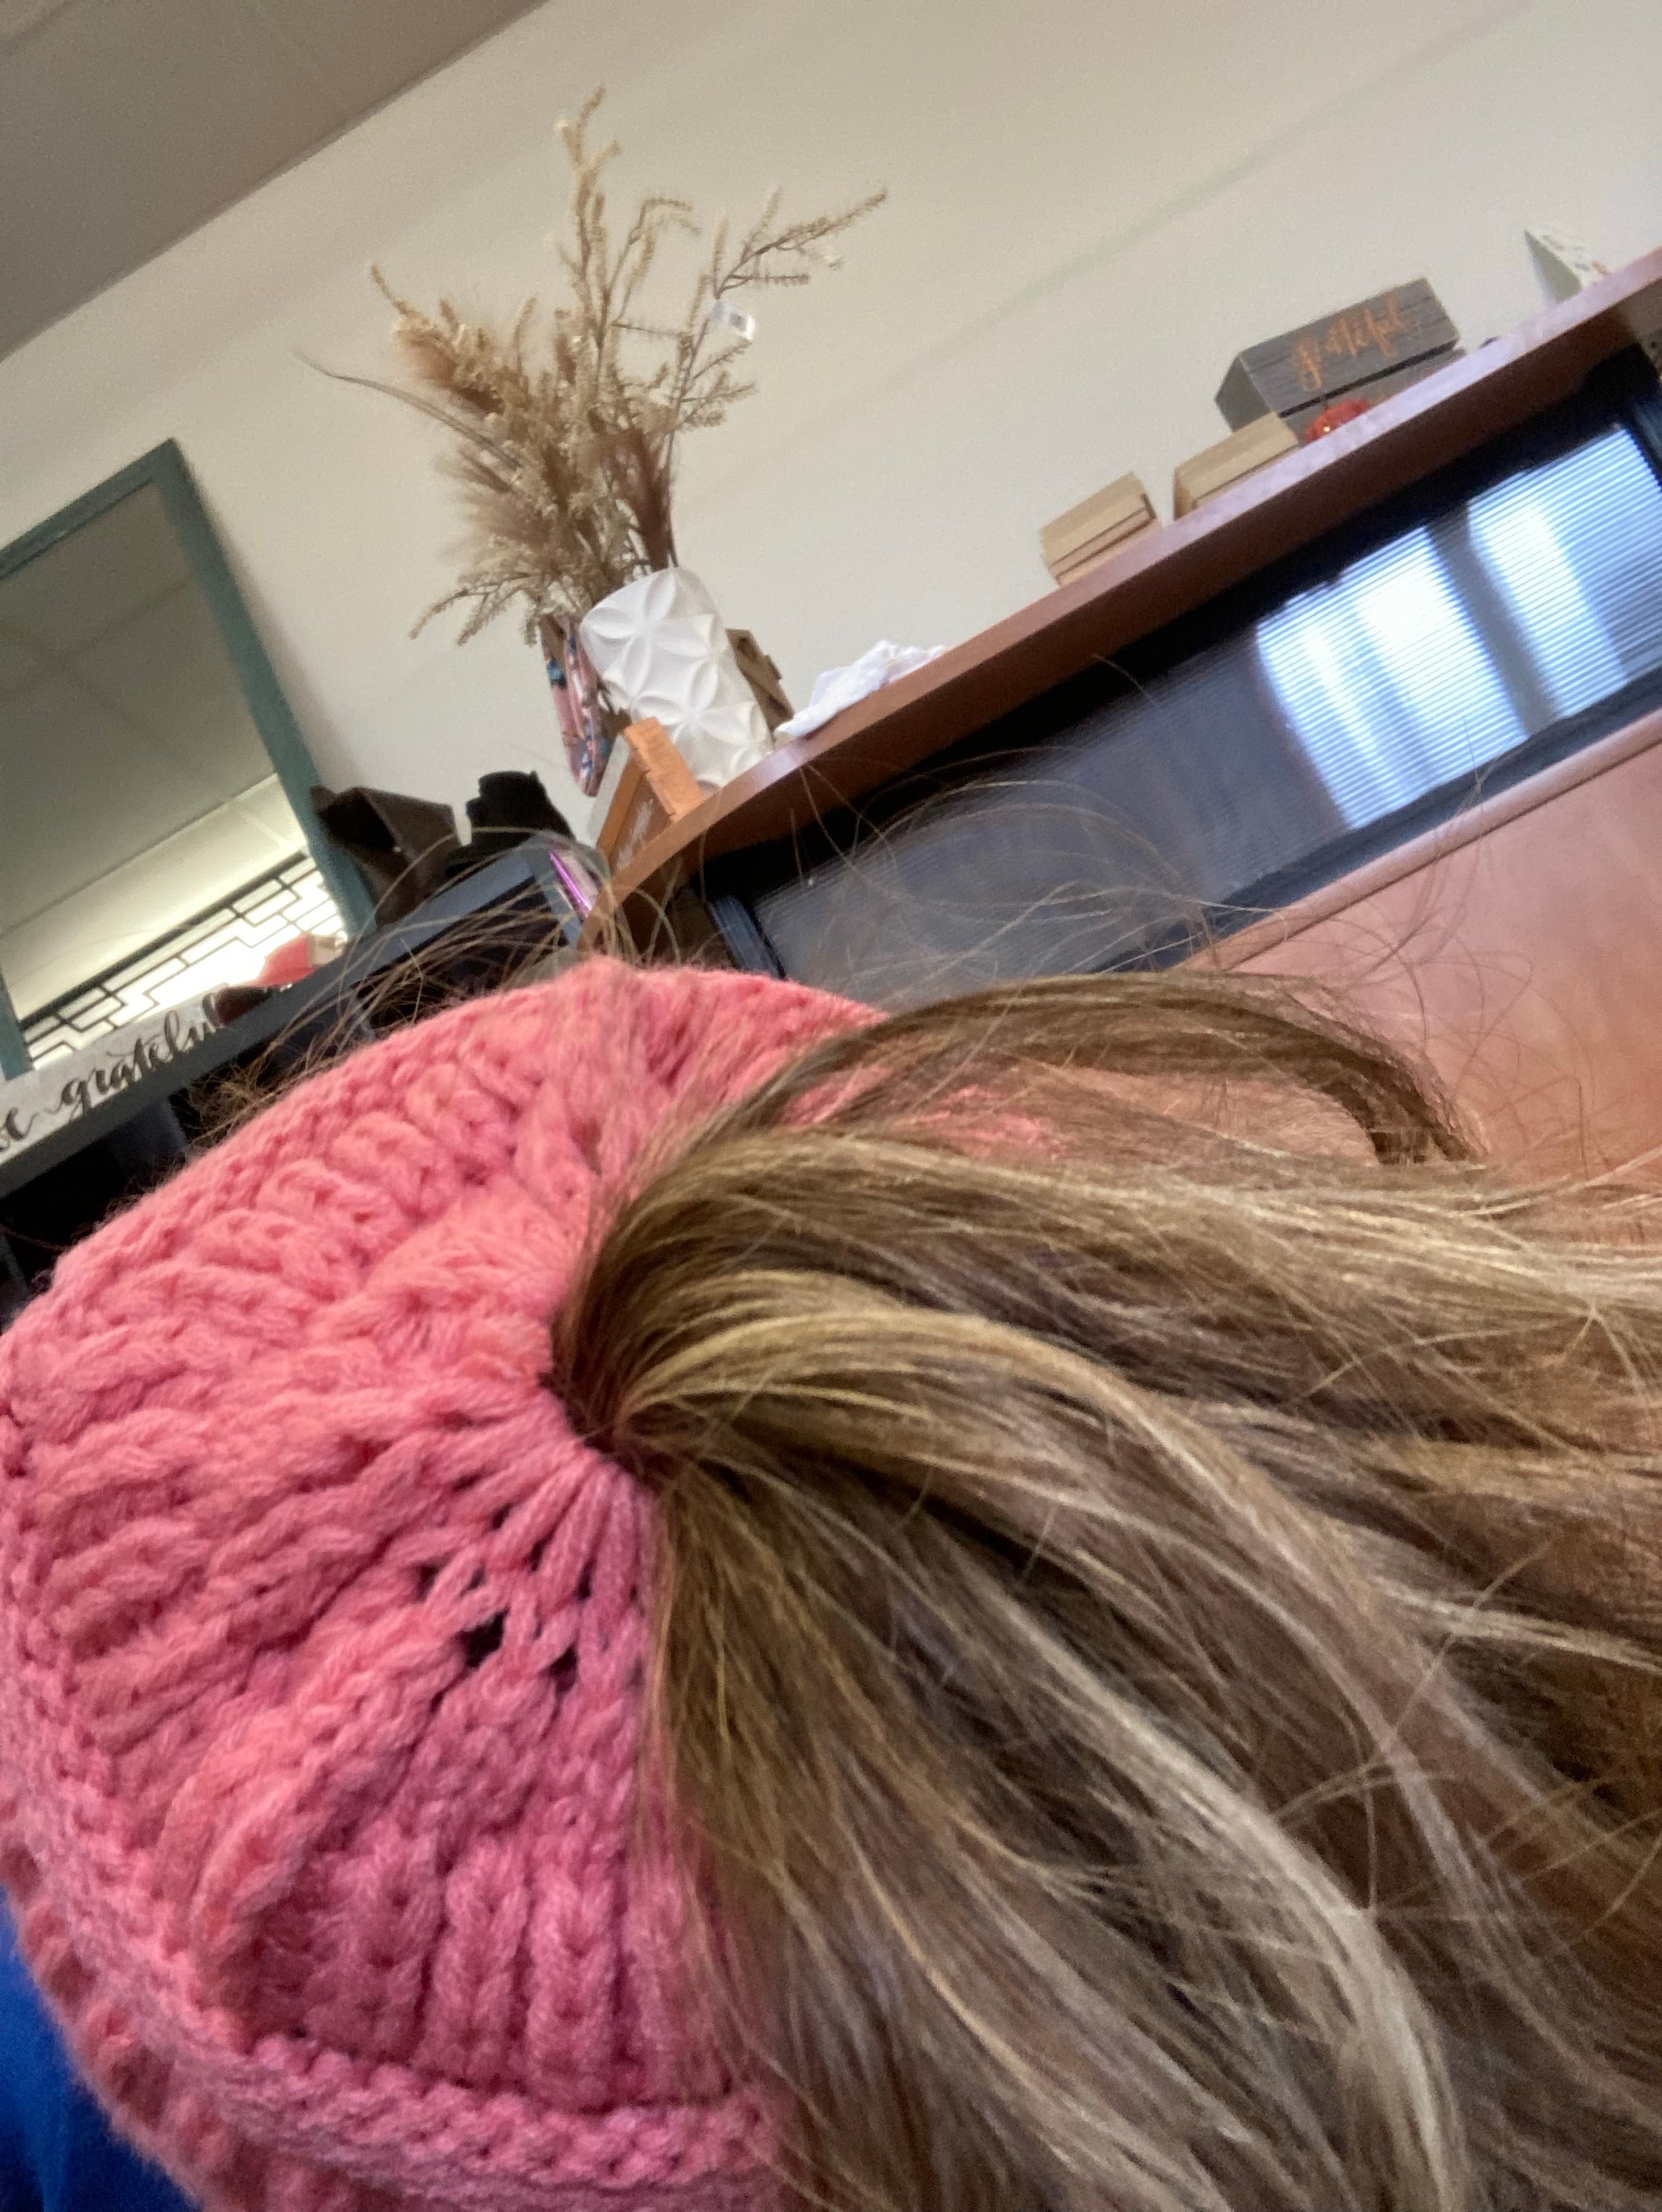 Pink ponytail hat